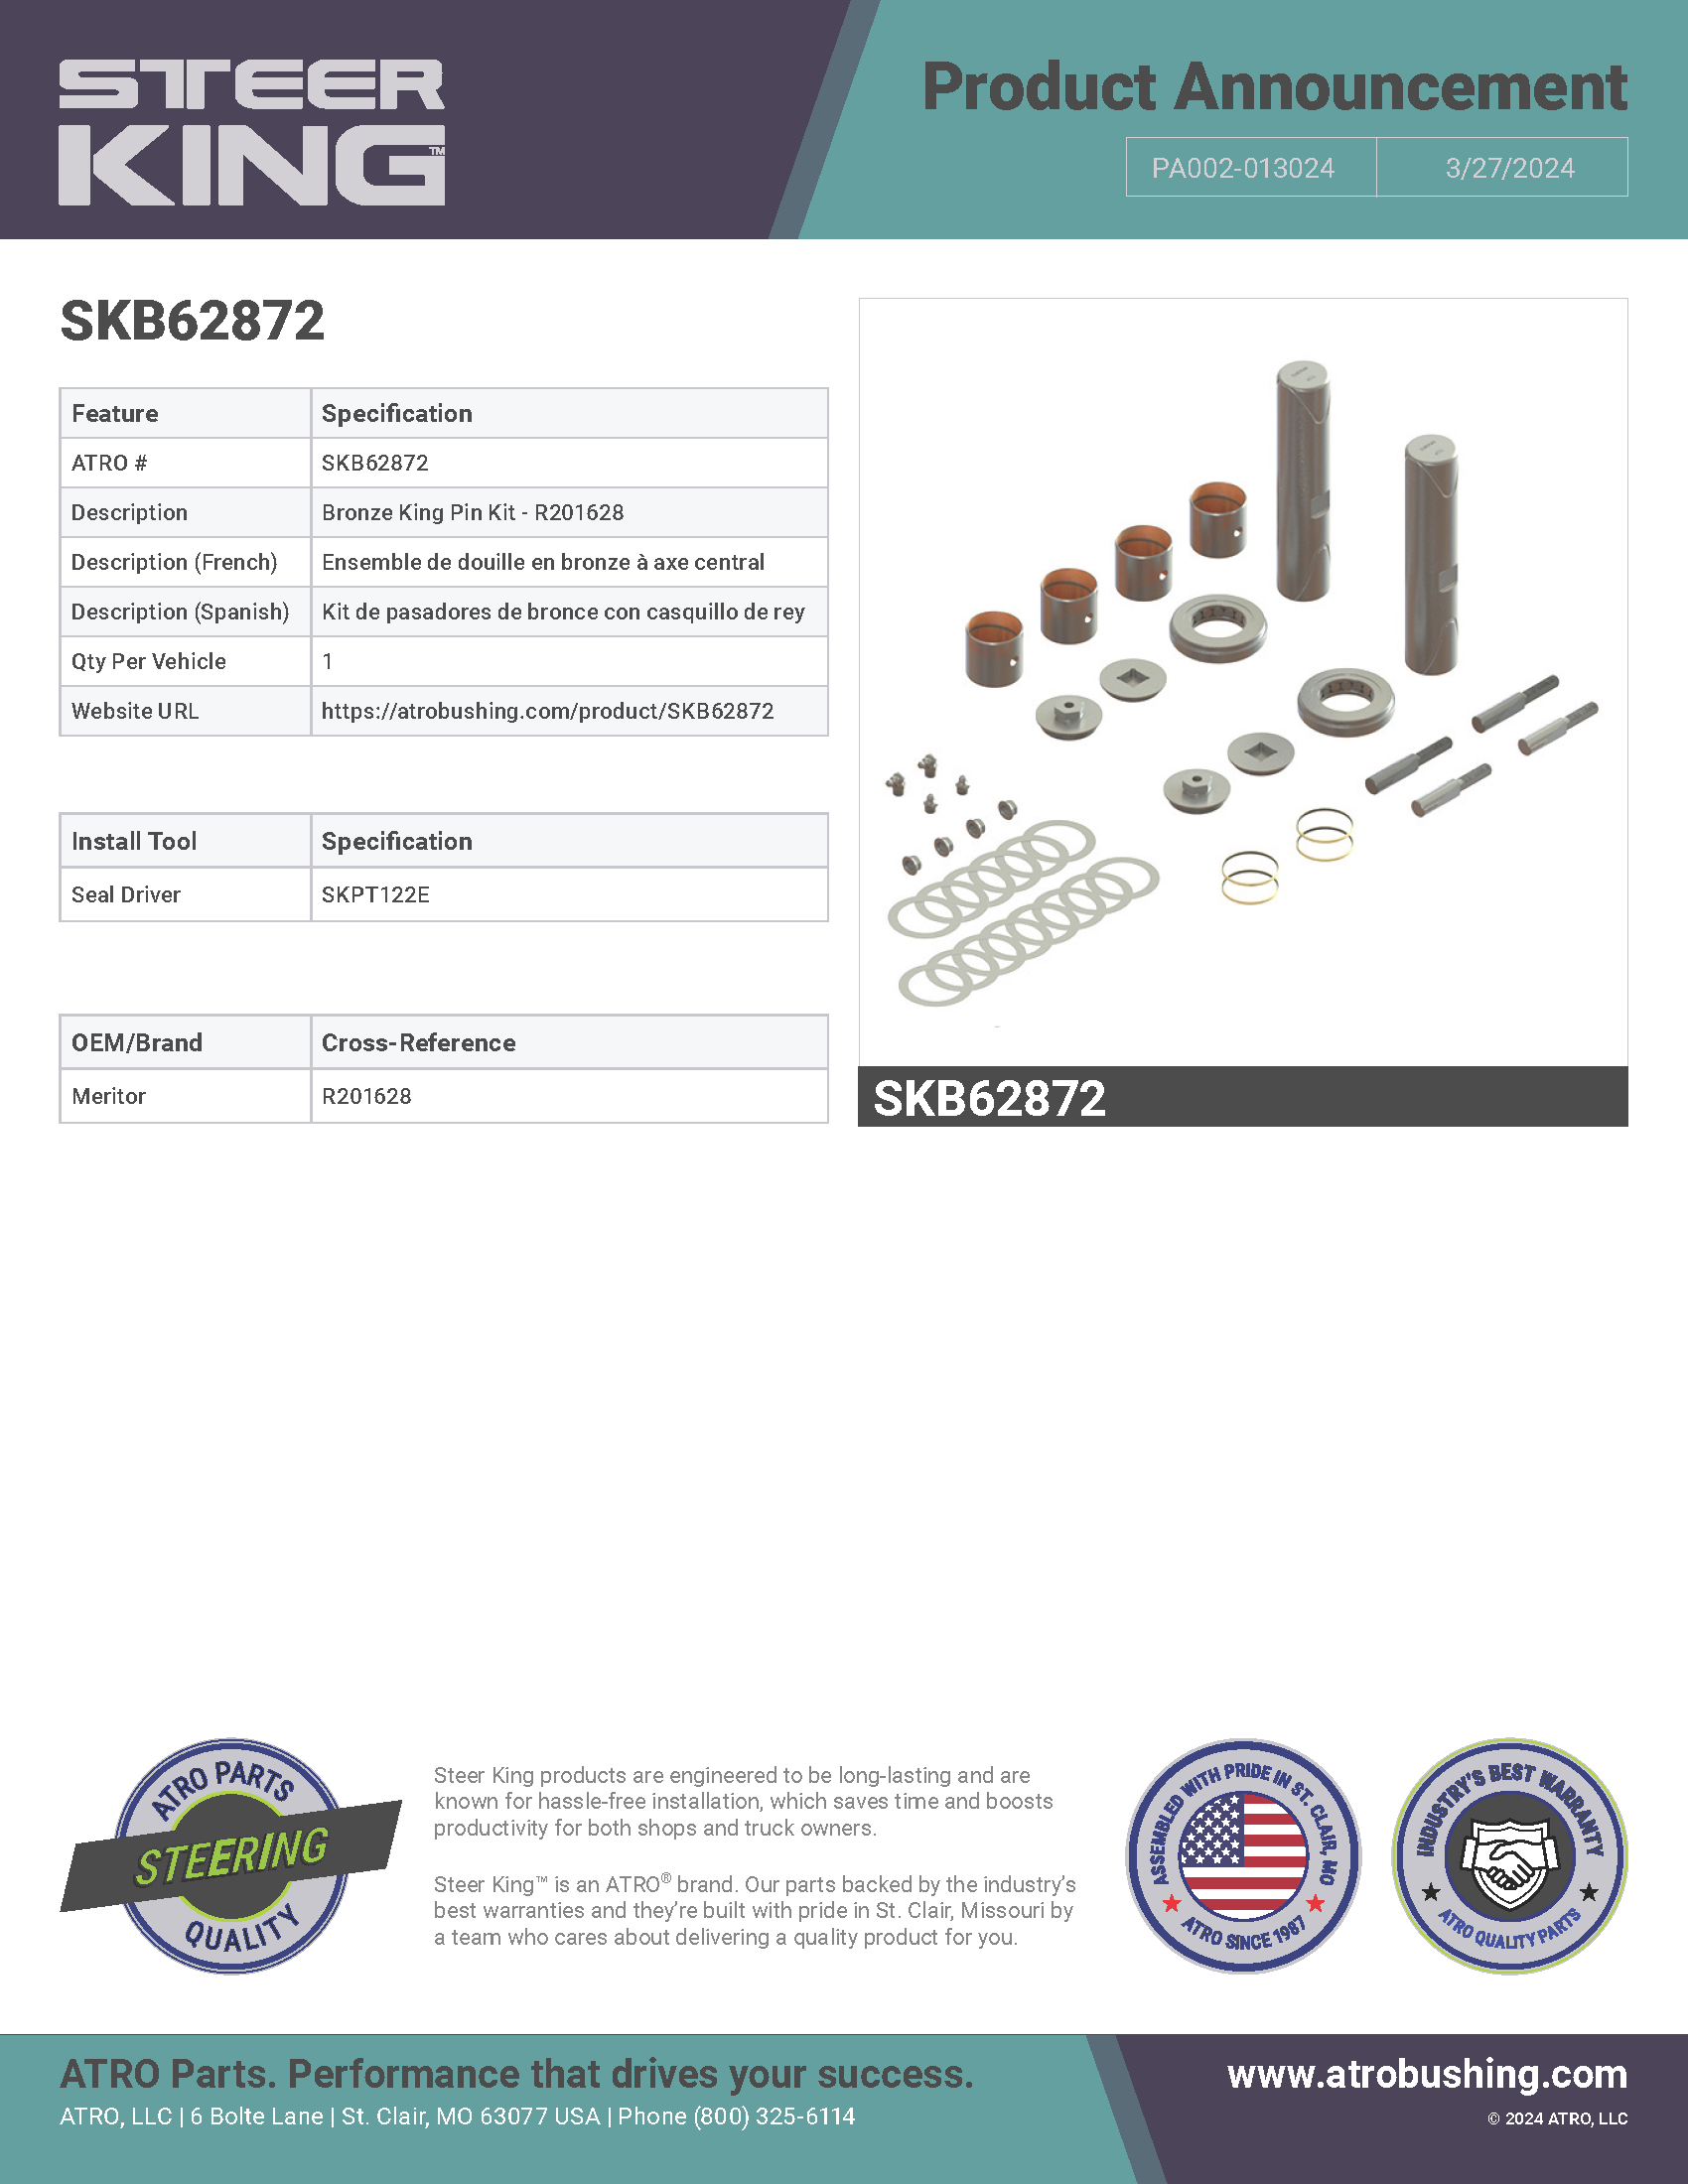 SKB62872 Bronze King Pin Kit - R201628 PA002-013024